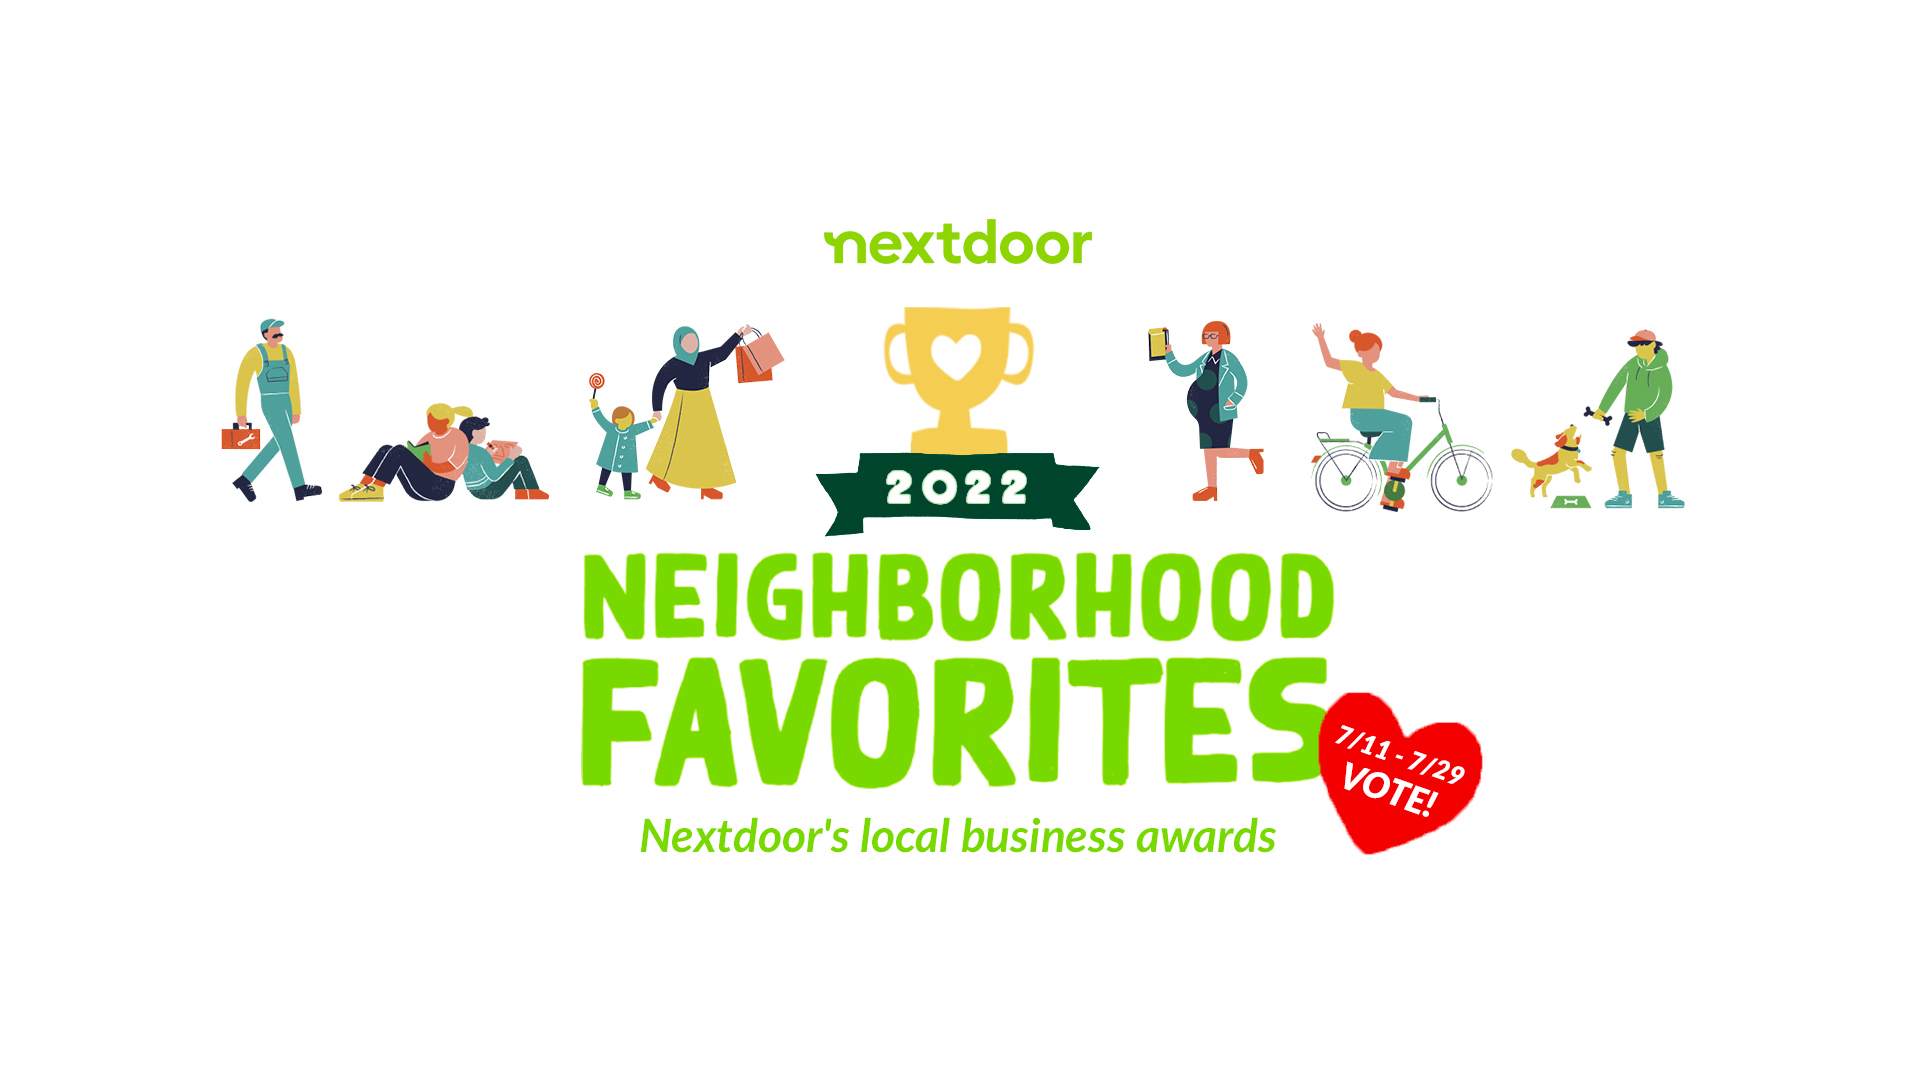 Vote for the Neighborhood Favorites local business awards Nextdoor